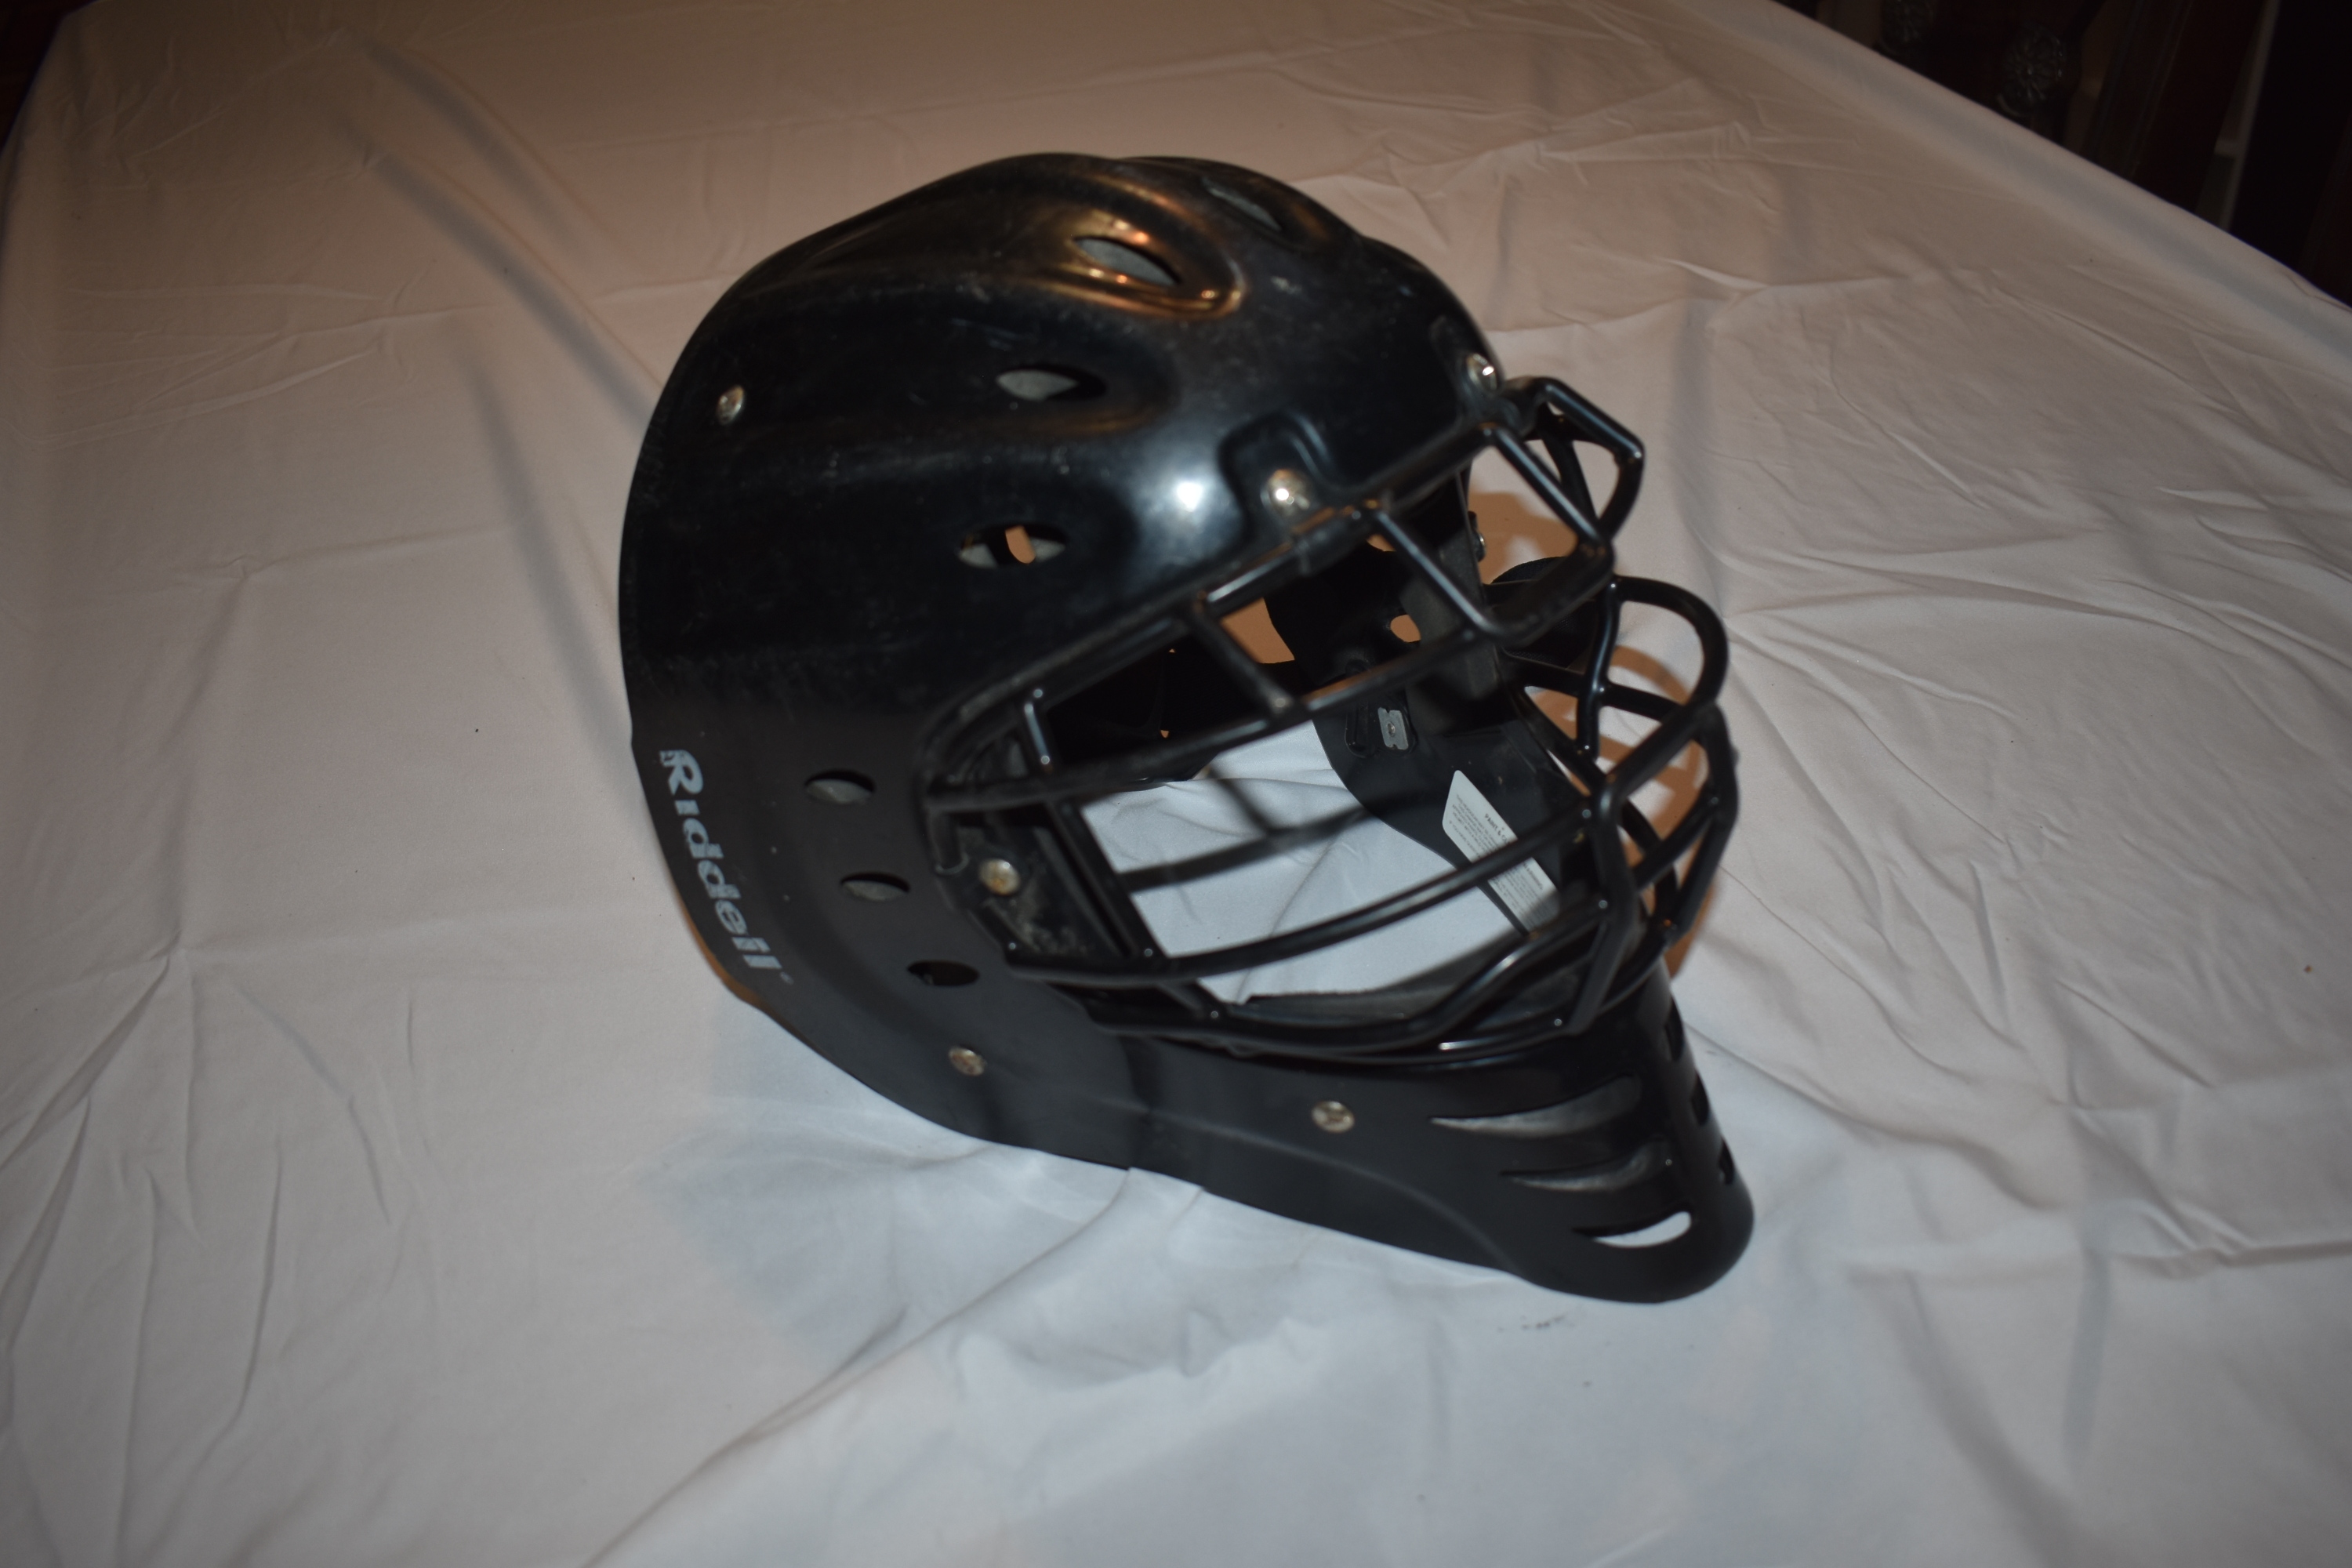 Riddell Baseball Catchers Helmet & Mask CH-HS2, Black, Large